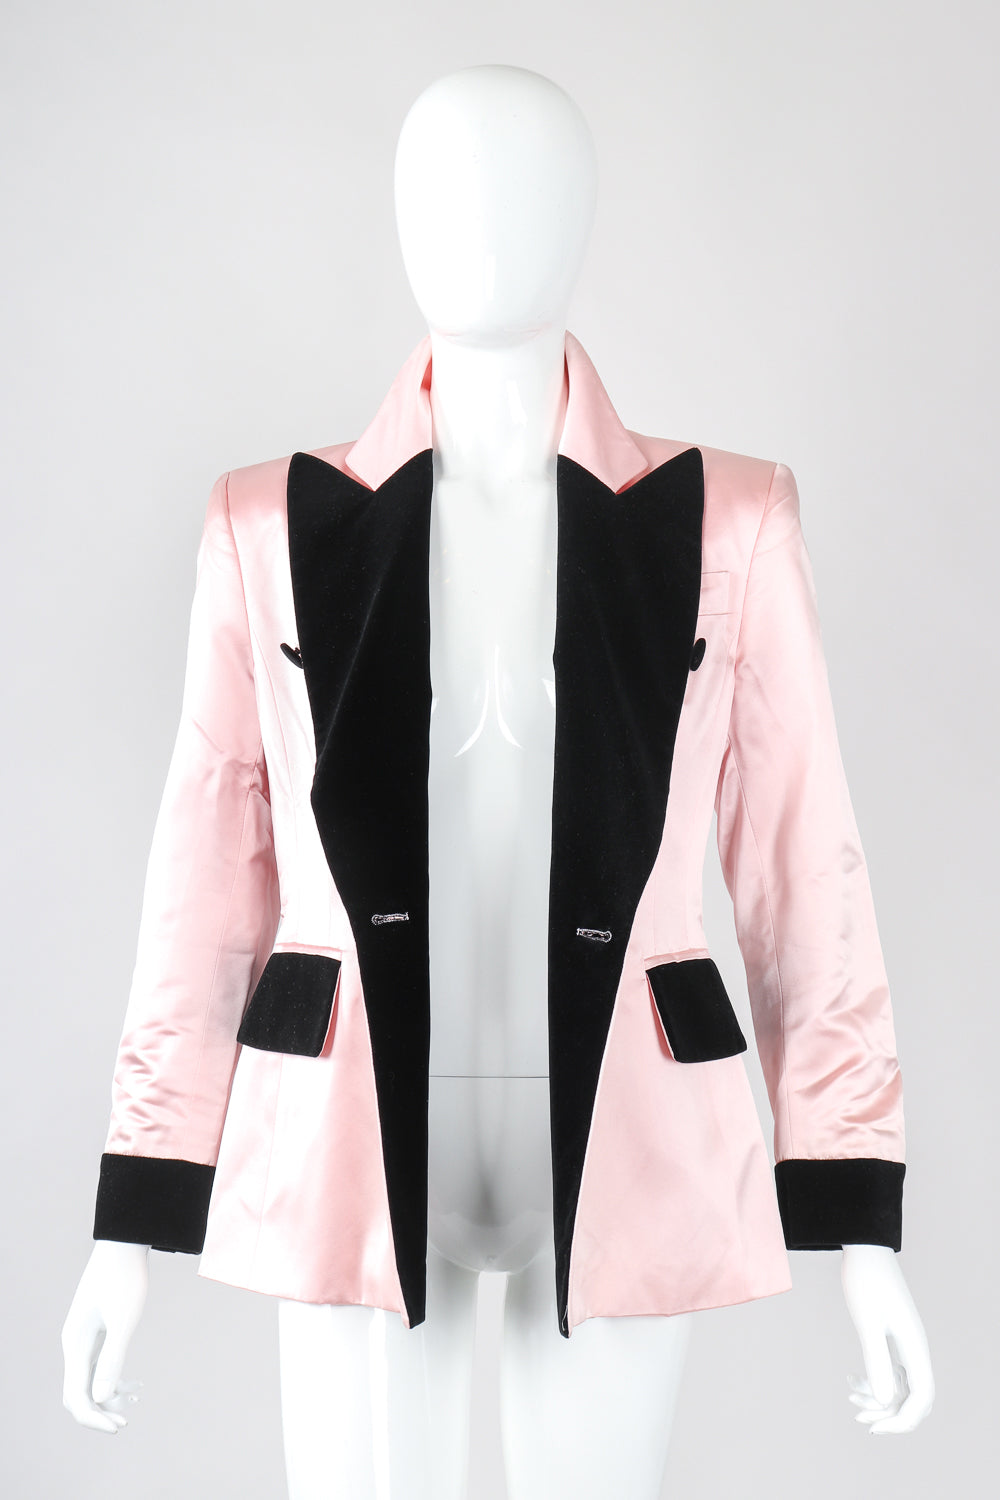 Recess Designer Consignment Escada Satin Contrast Tuxedo Jacket Los Angeles Resale